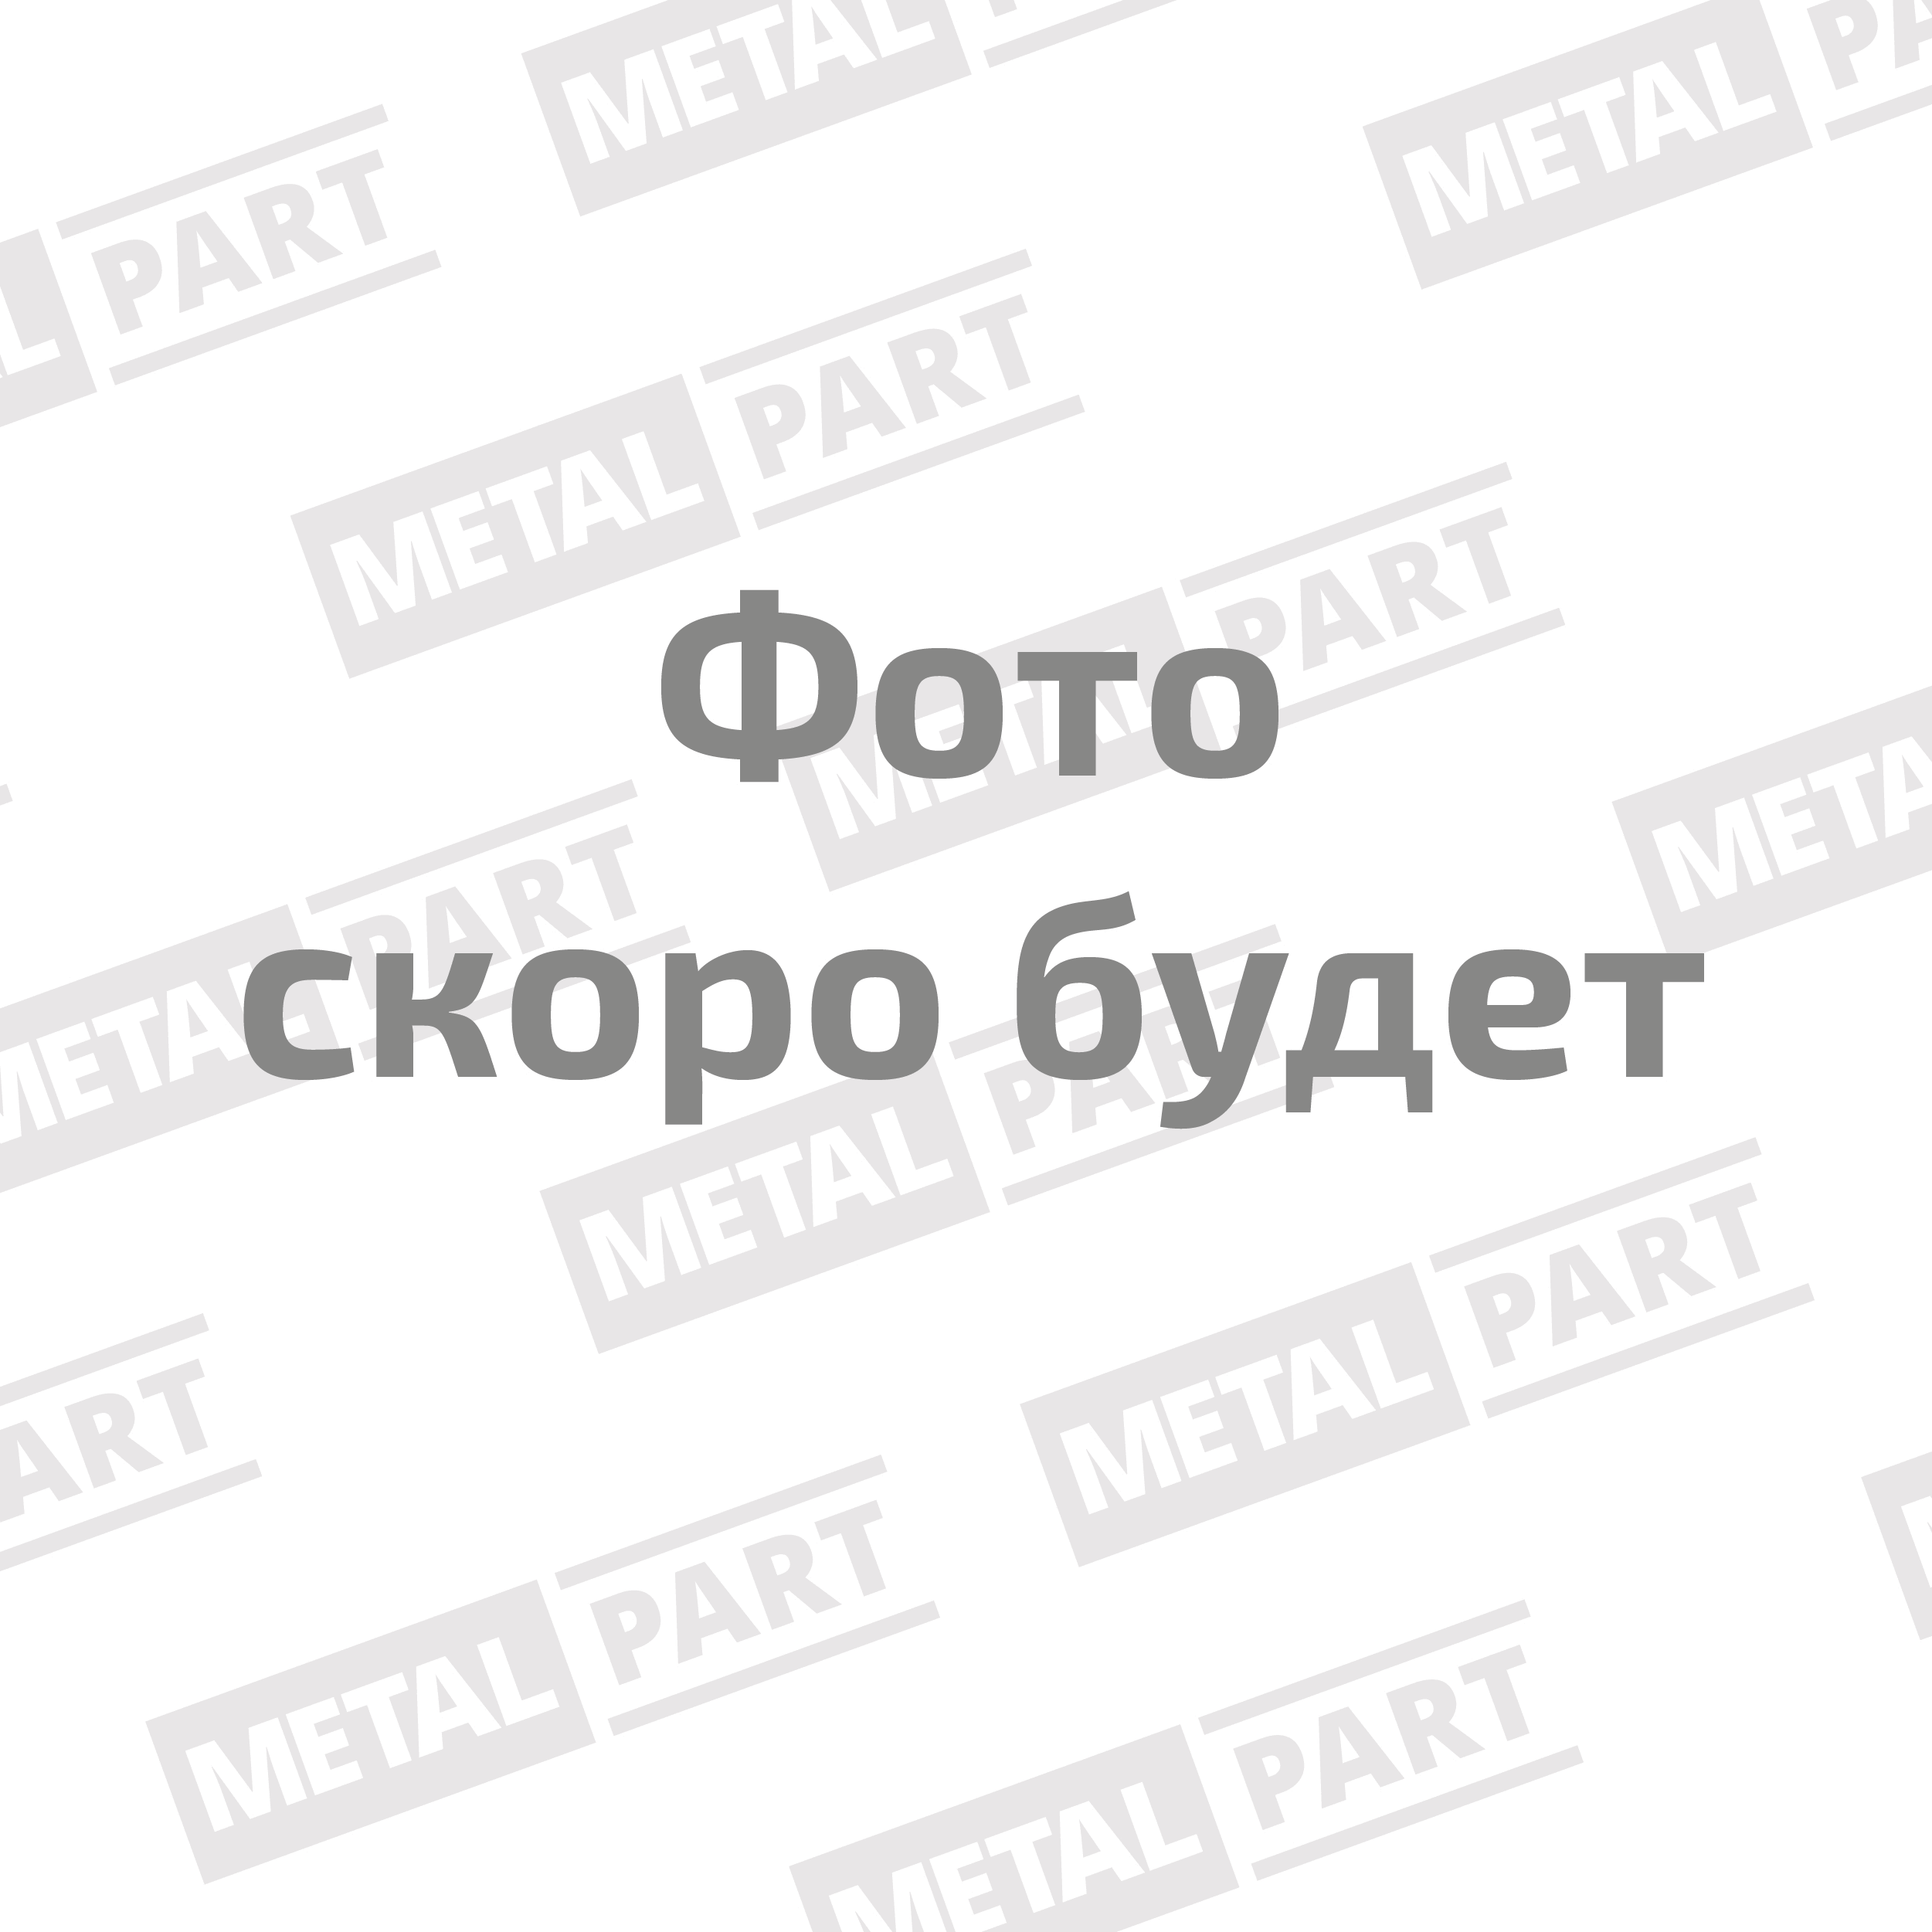 Вал карданный "MetalPart"  переднего моста для автомобилей УАЗ-3151, -469 с мостами "Тимкен" и  реду